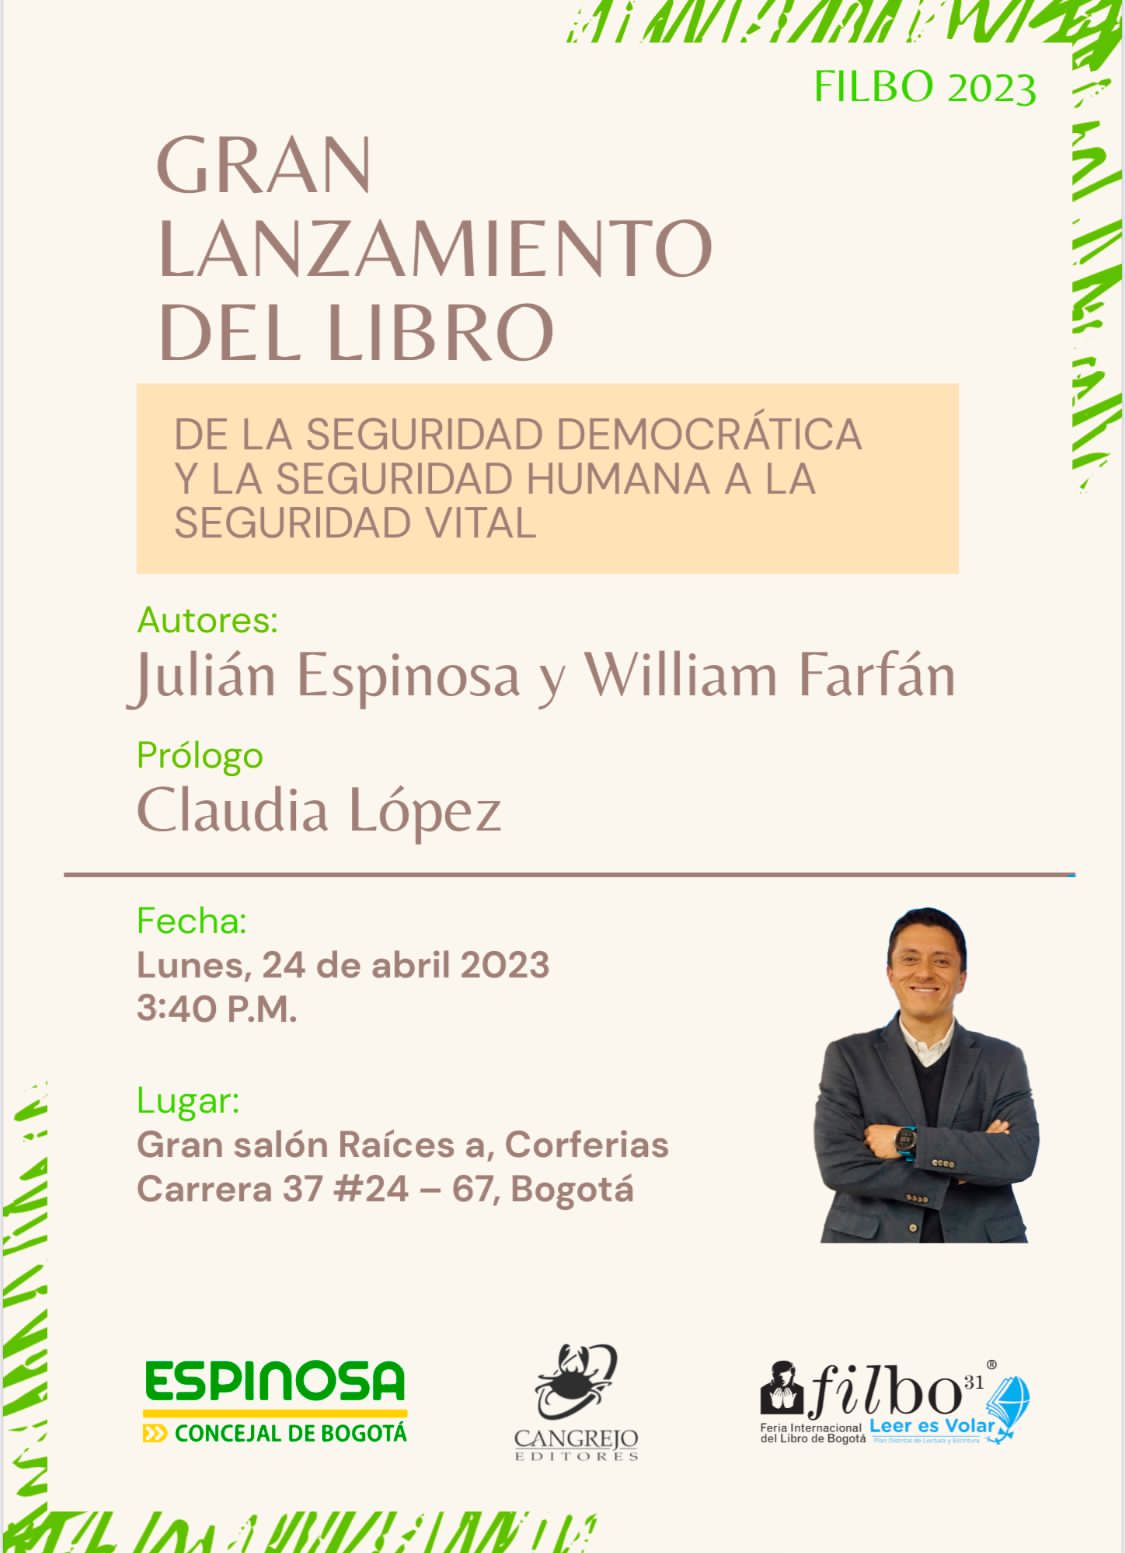 Imagen con la invitación del Concejal Julián Espinosa para la presentación de su libro 